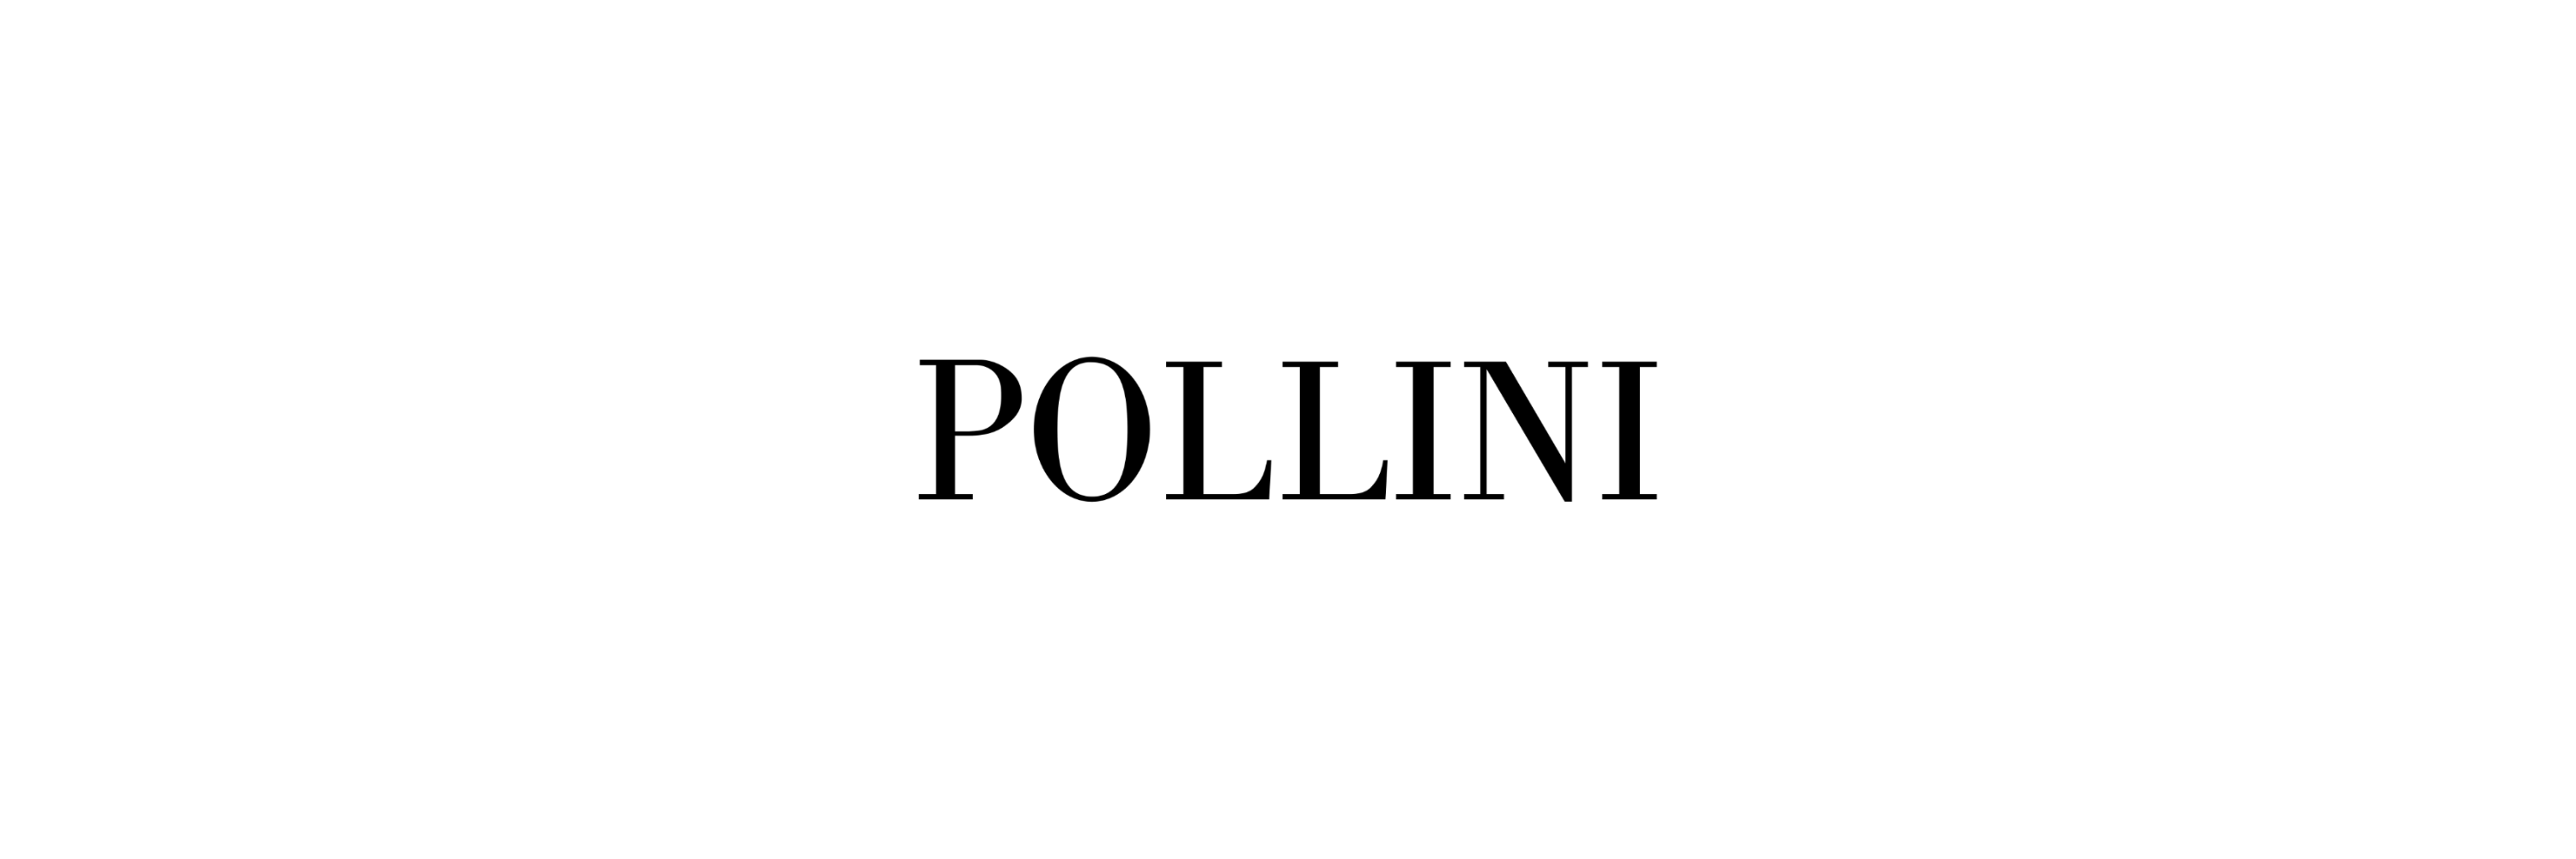 Piccola Pelletteria Pollini